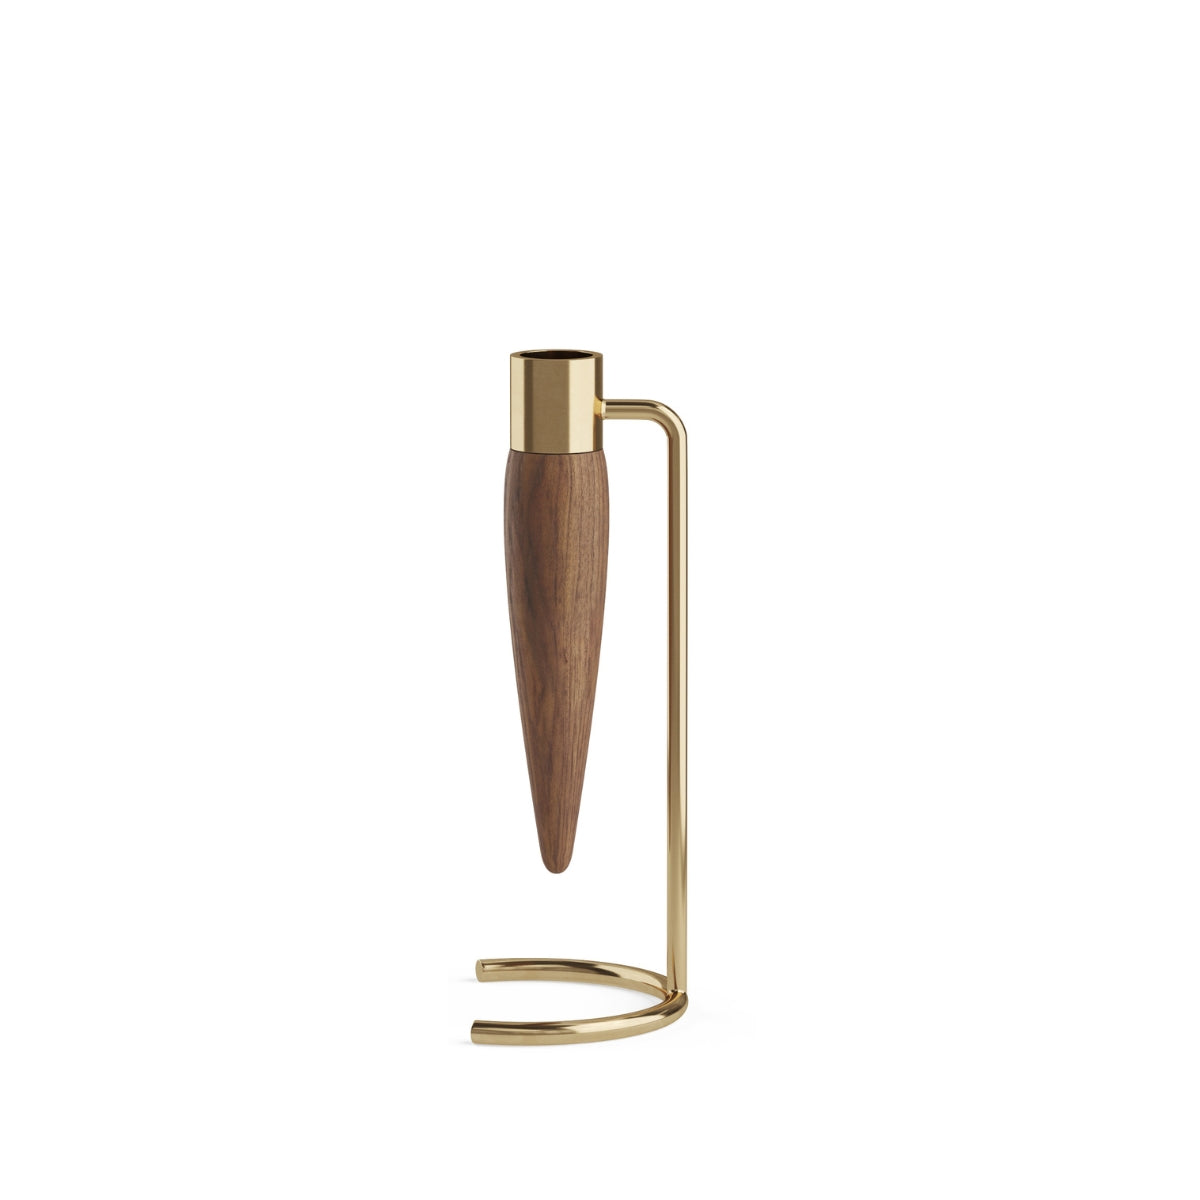 Audo Copenhagen | Umanoff Candle Holder – Polished Brass/Walnut